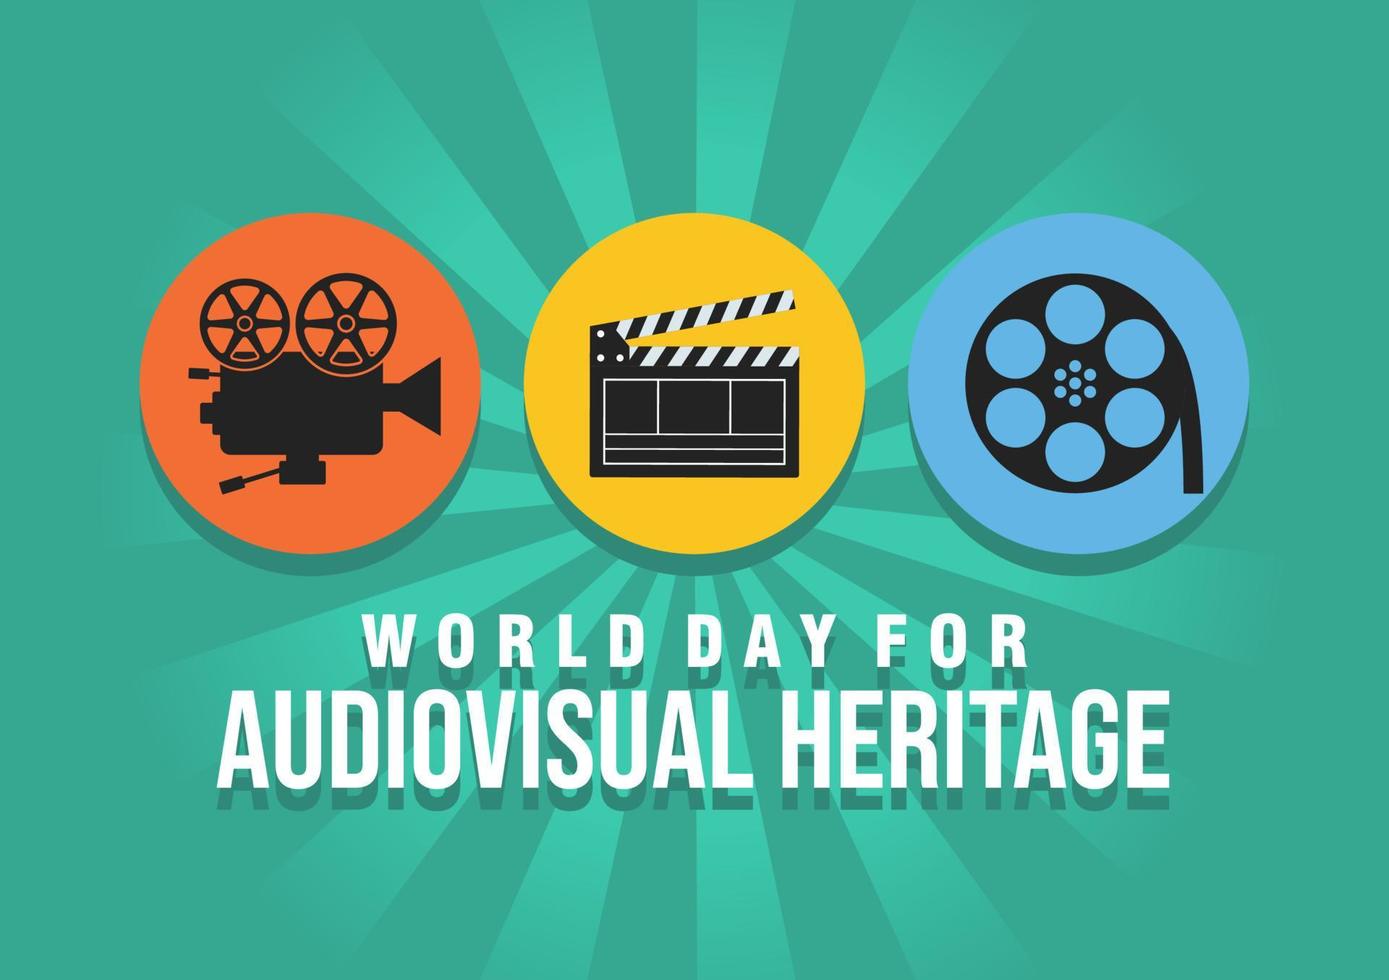 illustration vectorielle sur le thème de la journée mondiale du patrimoine audiovisuel célébrée chaque année le 27 octobre à travers le monde. illustration de la bannière du patrimoine audiovisuel. vecteur eps 10